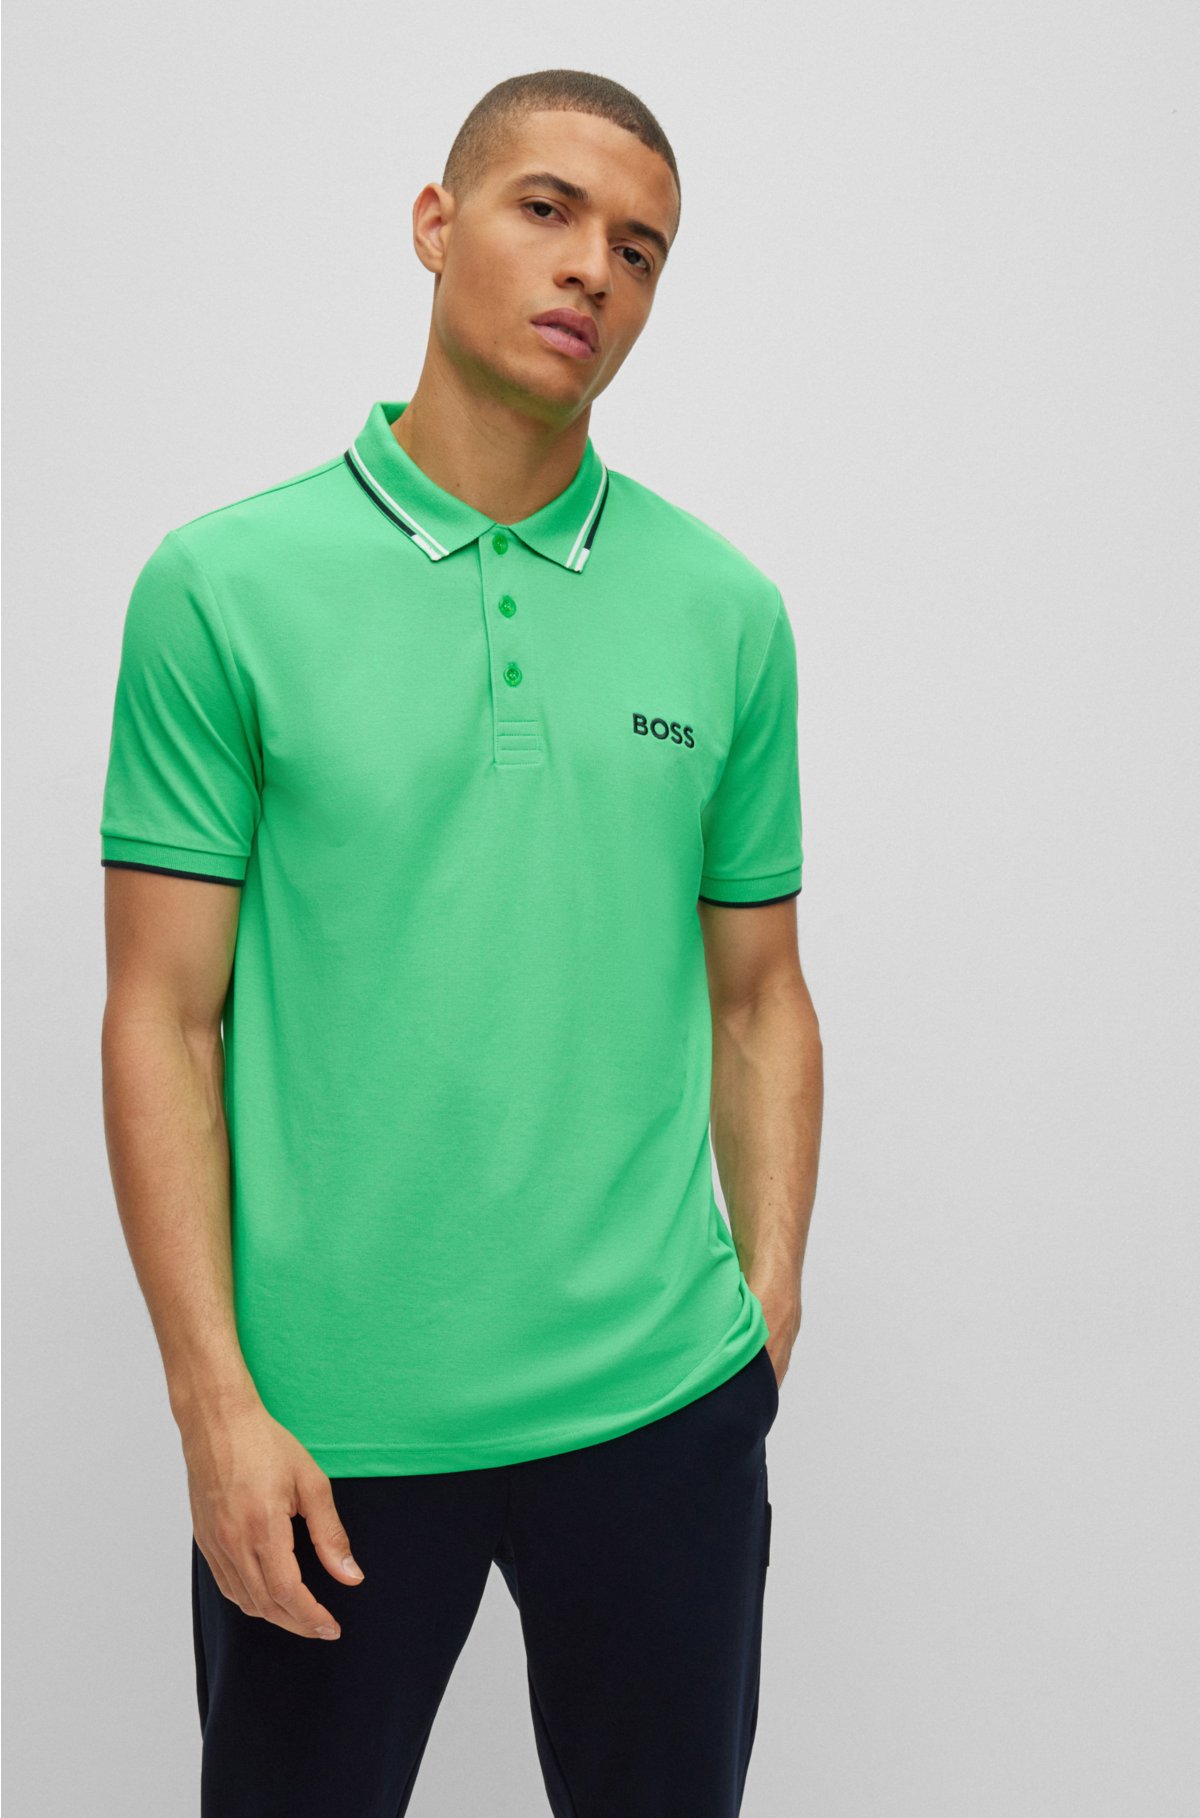 BOSS - Cotton-blend polo shirt details